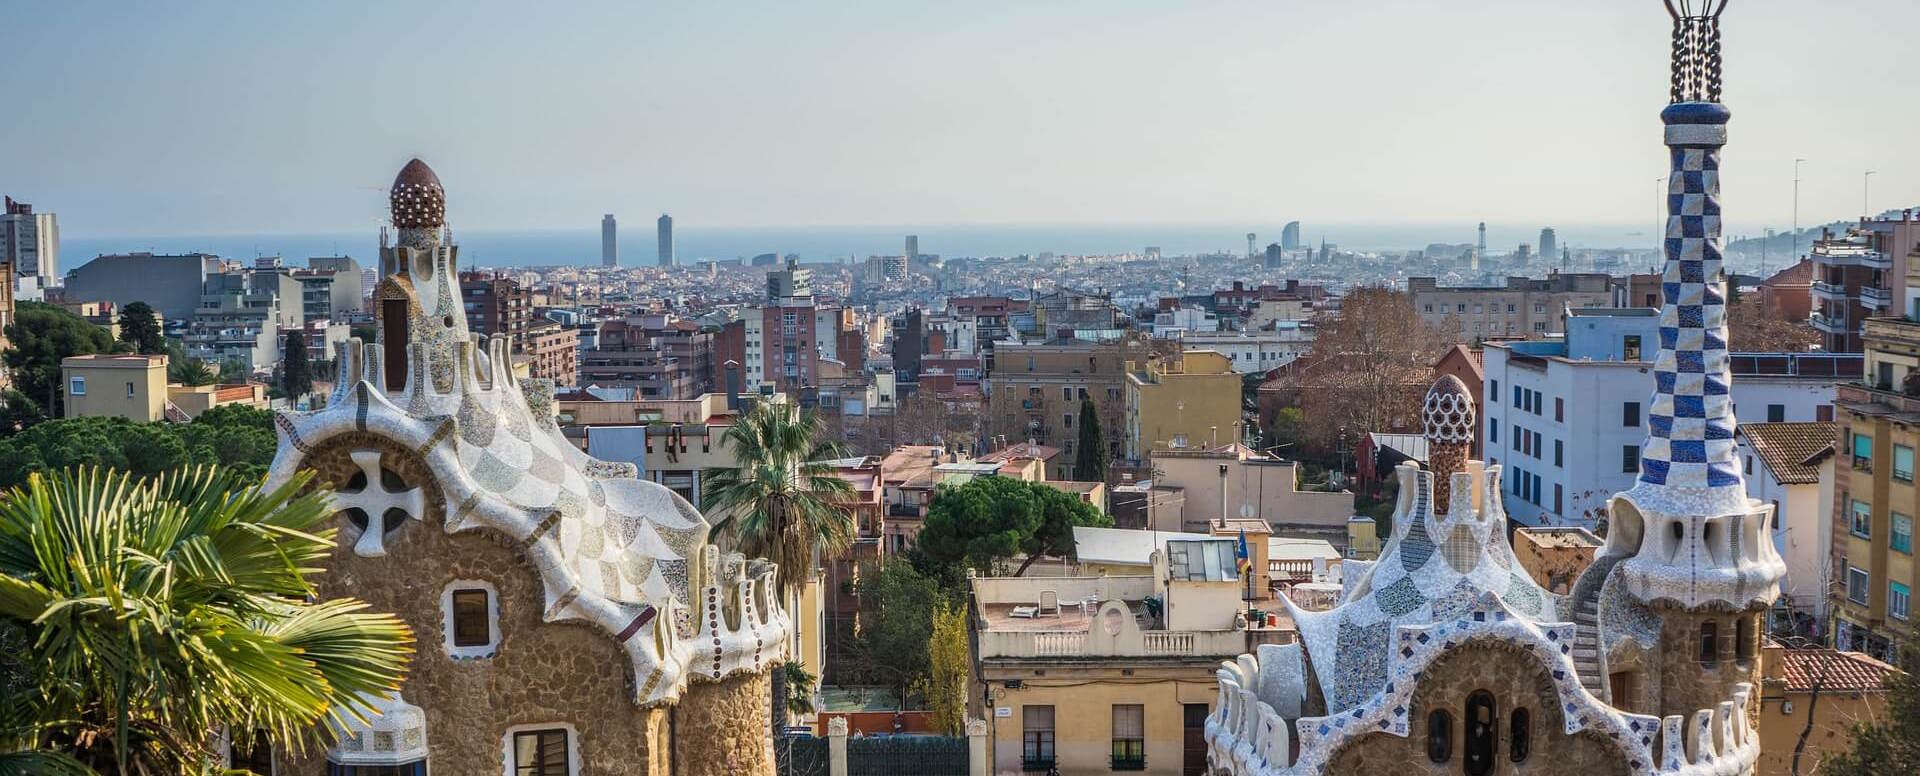 10 things to do in Spain - Spain